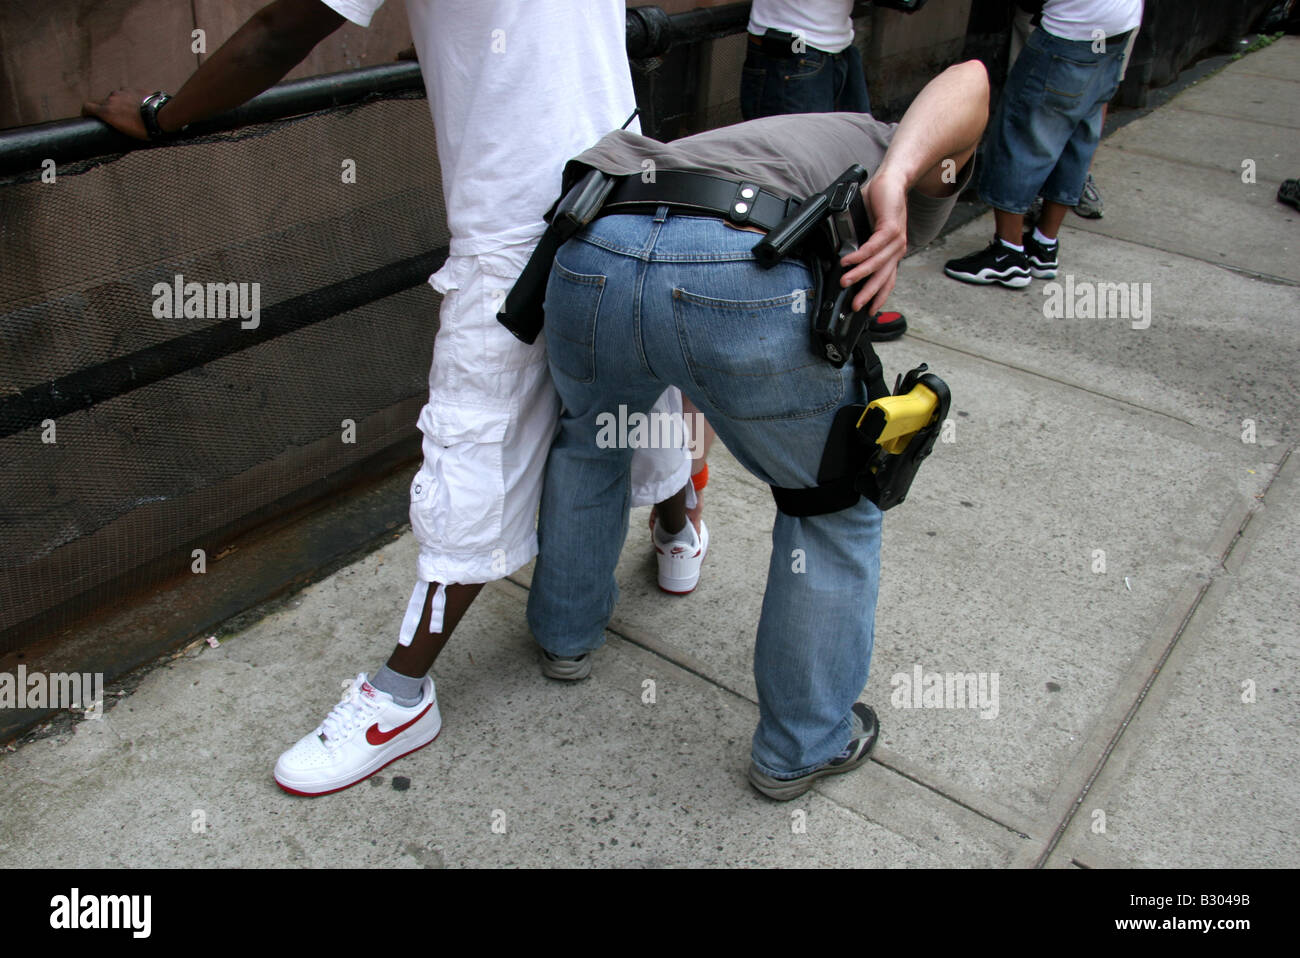 Des détectives de police anti-crime en civil fouillant des suspects à Harlem New York Banque D'Images